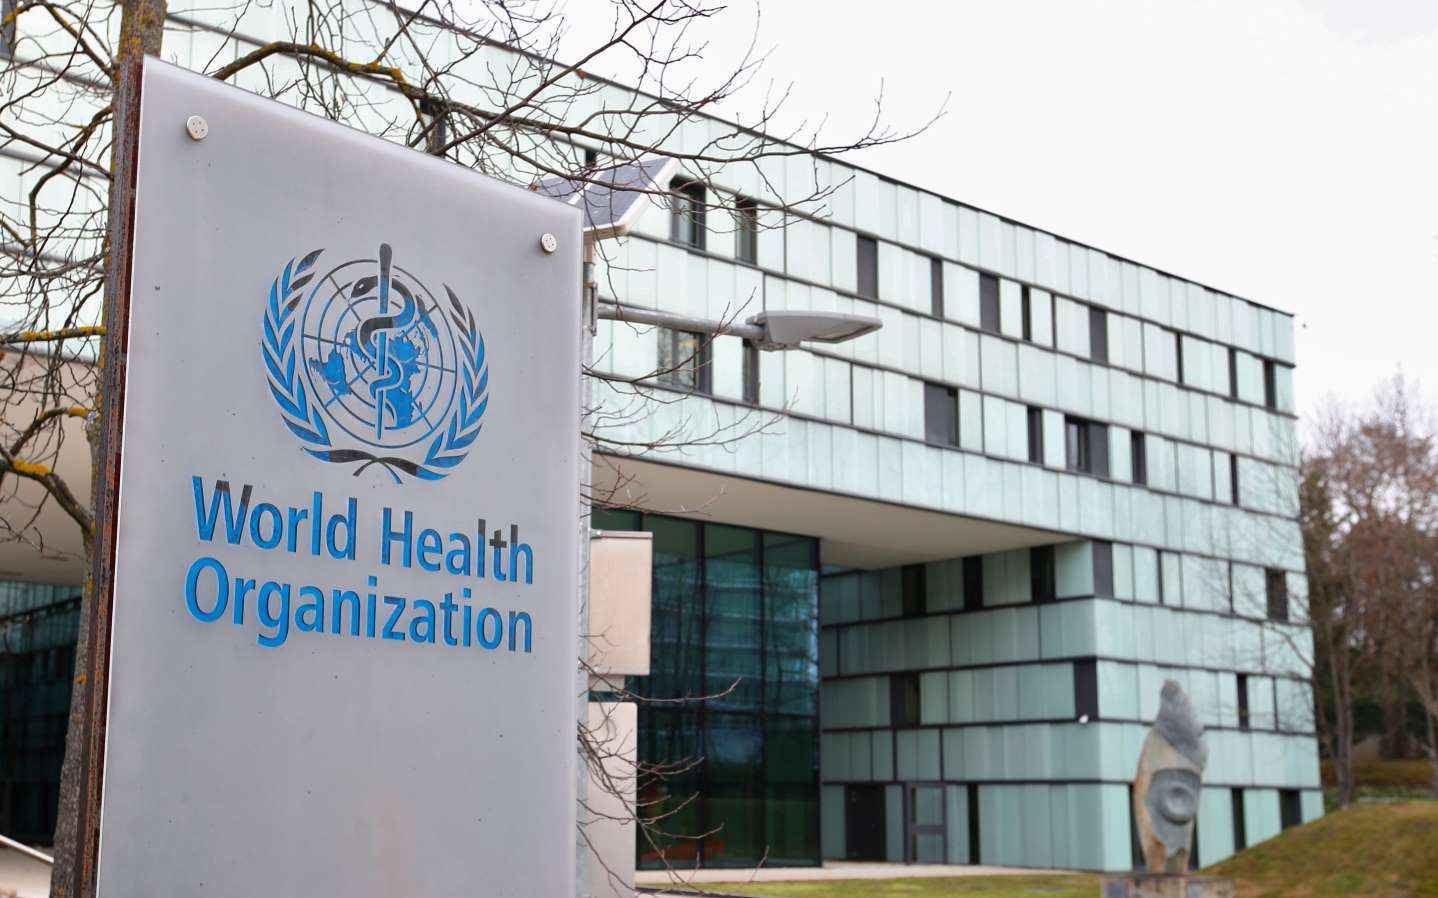 تخمین سازمان جهانی بهداشت از مهار کرونا در ظرف ۲ سال